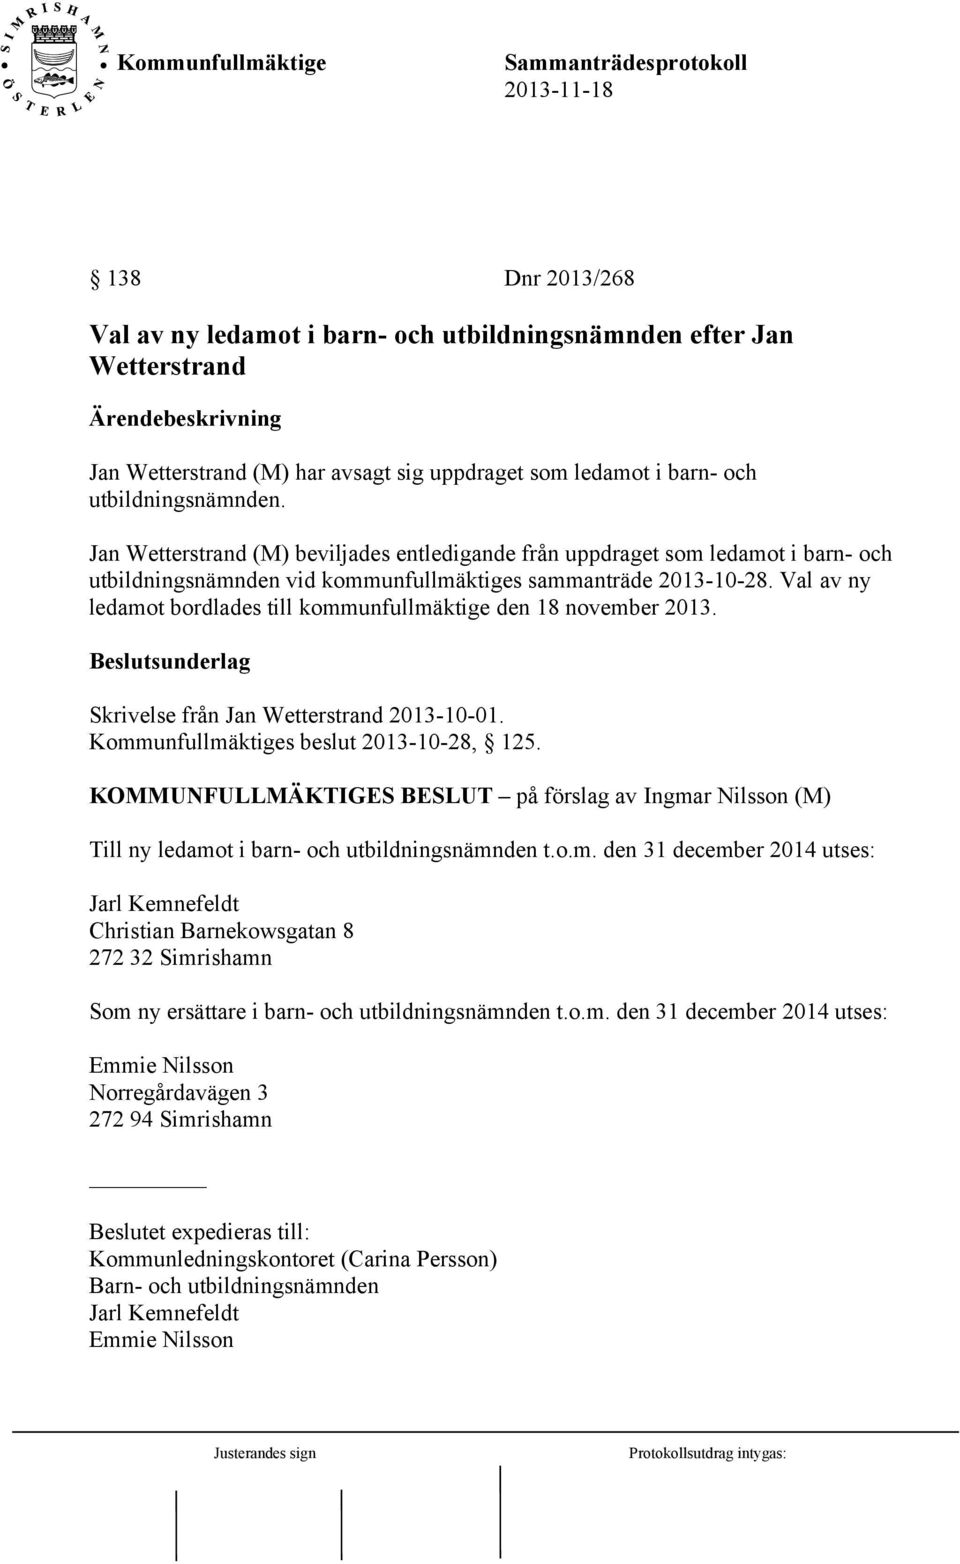 Val av ny ledamot bordlades till kommunfullmäktige den 18 november 2013. Beslutsunderlag Skrivelse från Jan Wetterstrand 2013-10-01. Kommunfullmäktiges beslut 2013-10-28, 125.